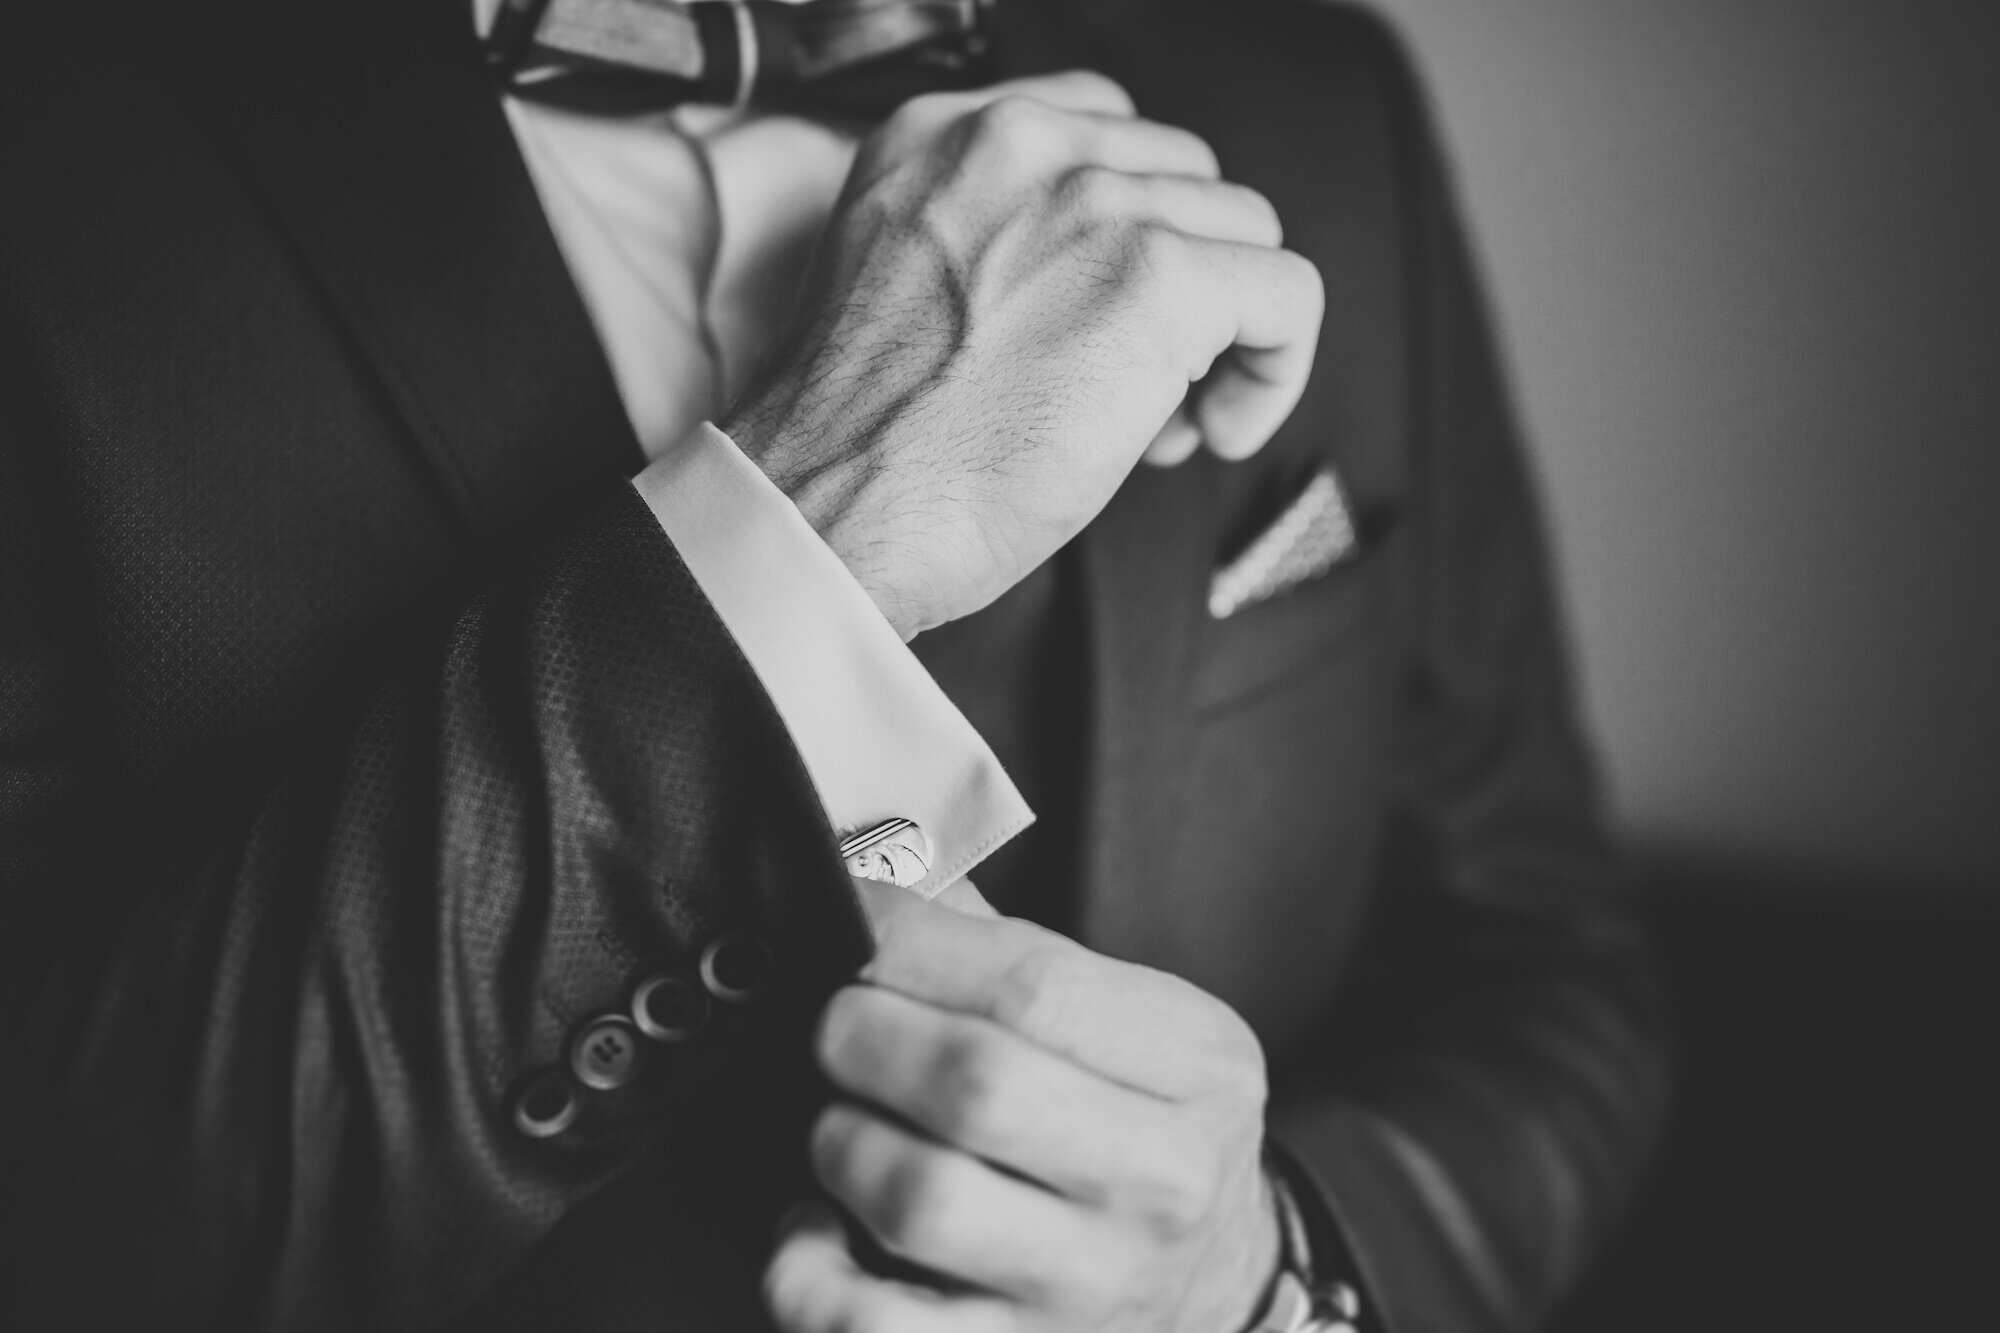 Man wearing a fancy tuxedo, adjusting cufflinks